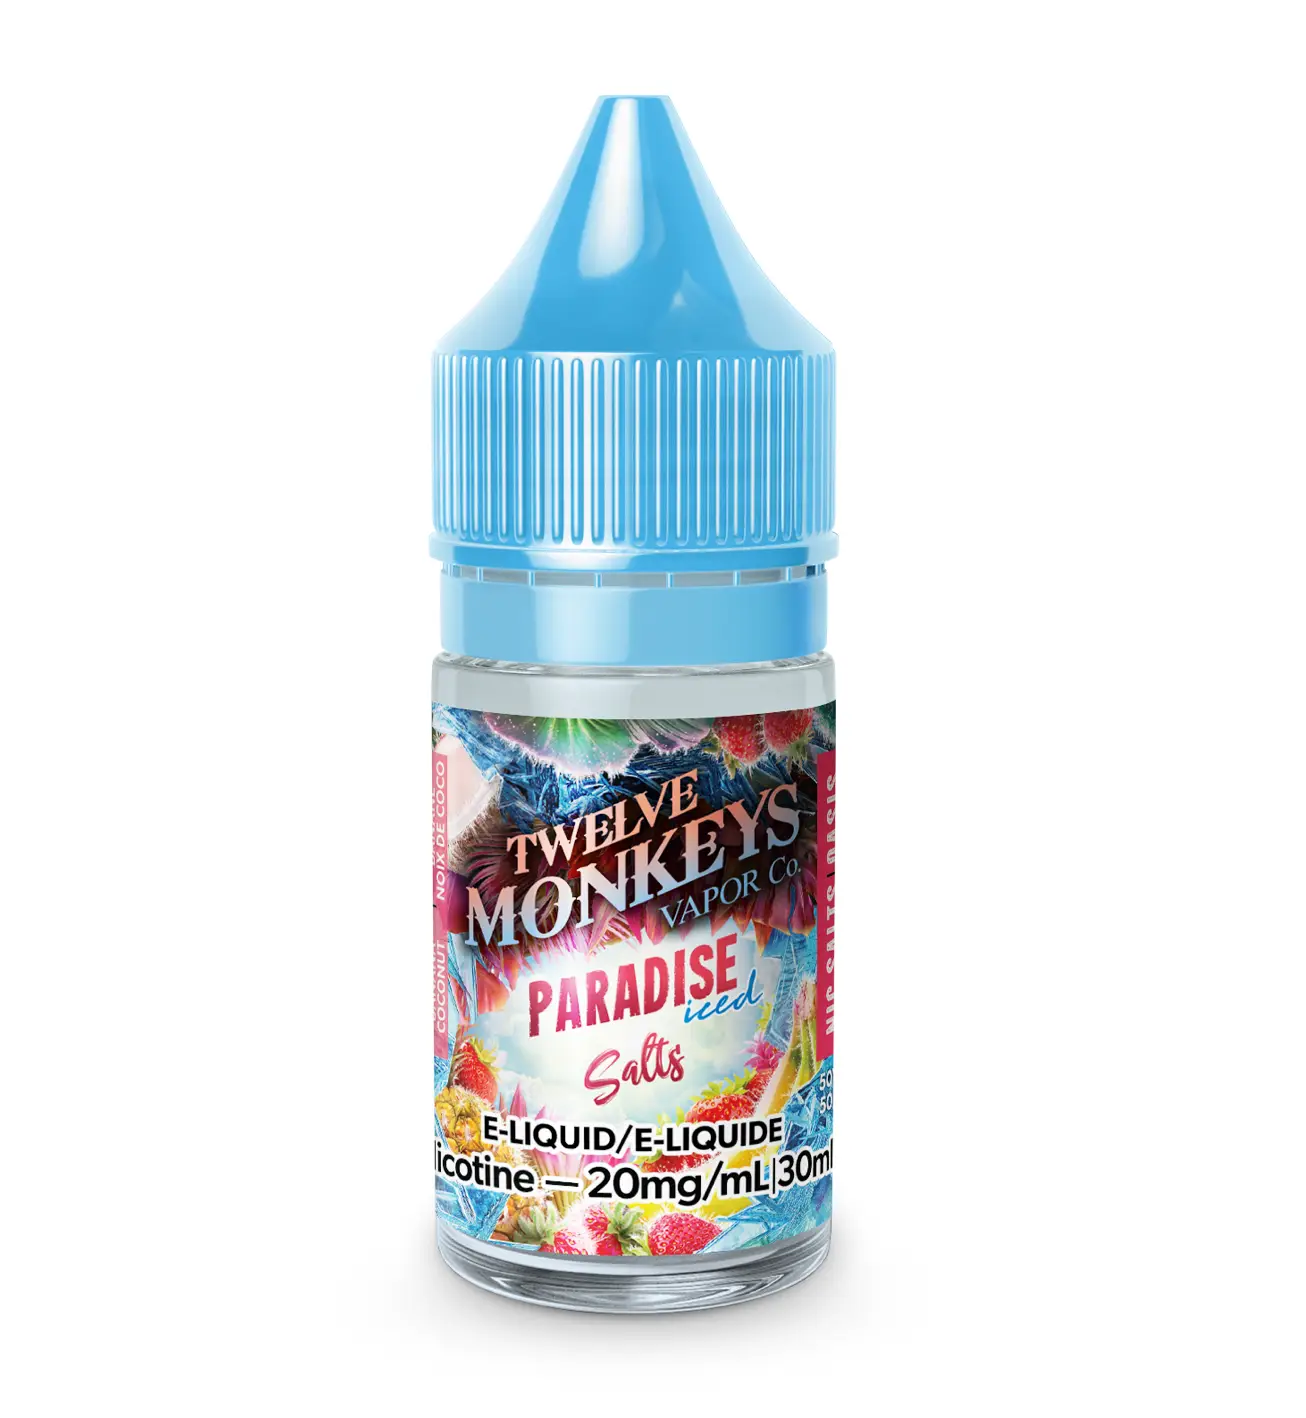 12 Monkeys - Oasis - Paradise Iced - Vape juice - Salt Nicotine